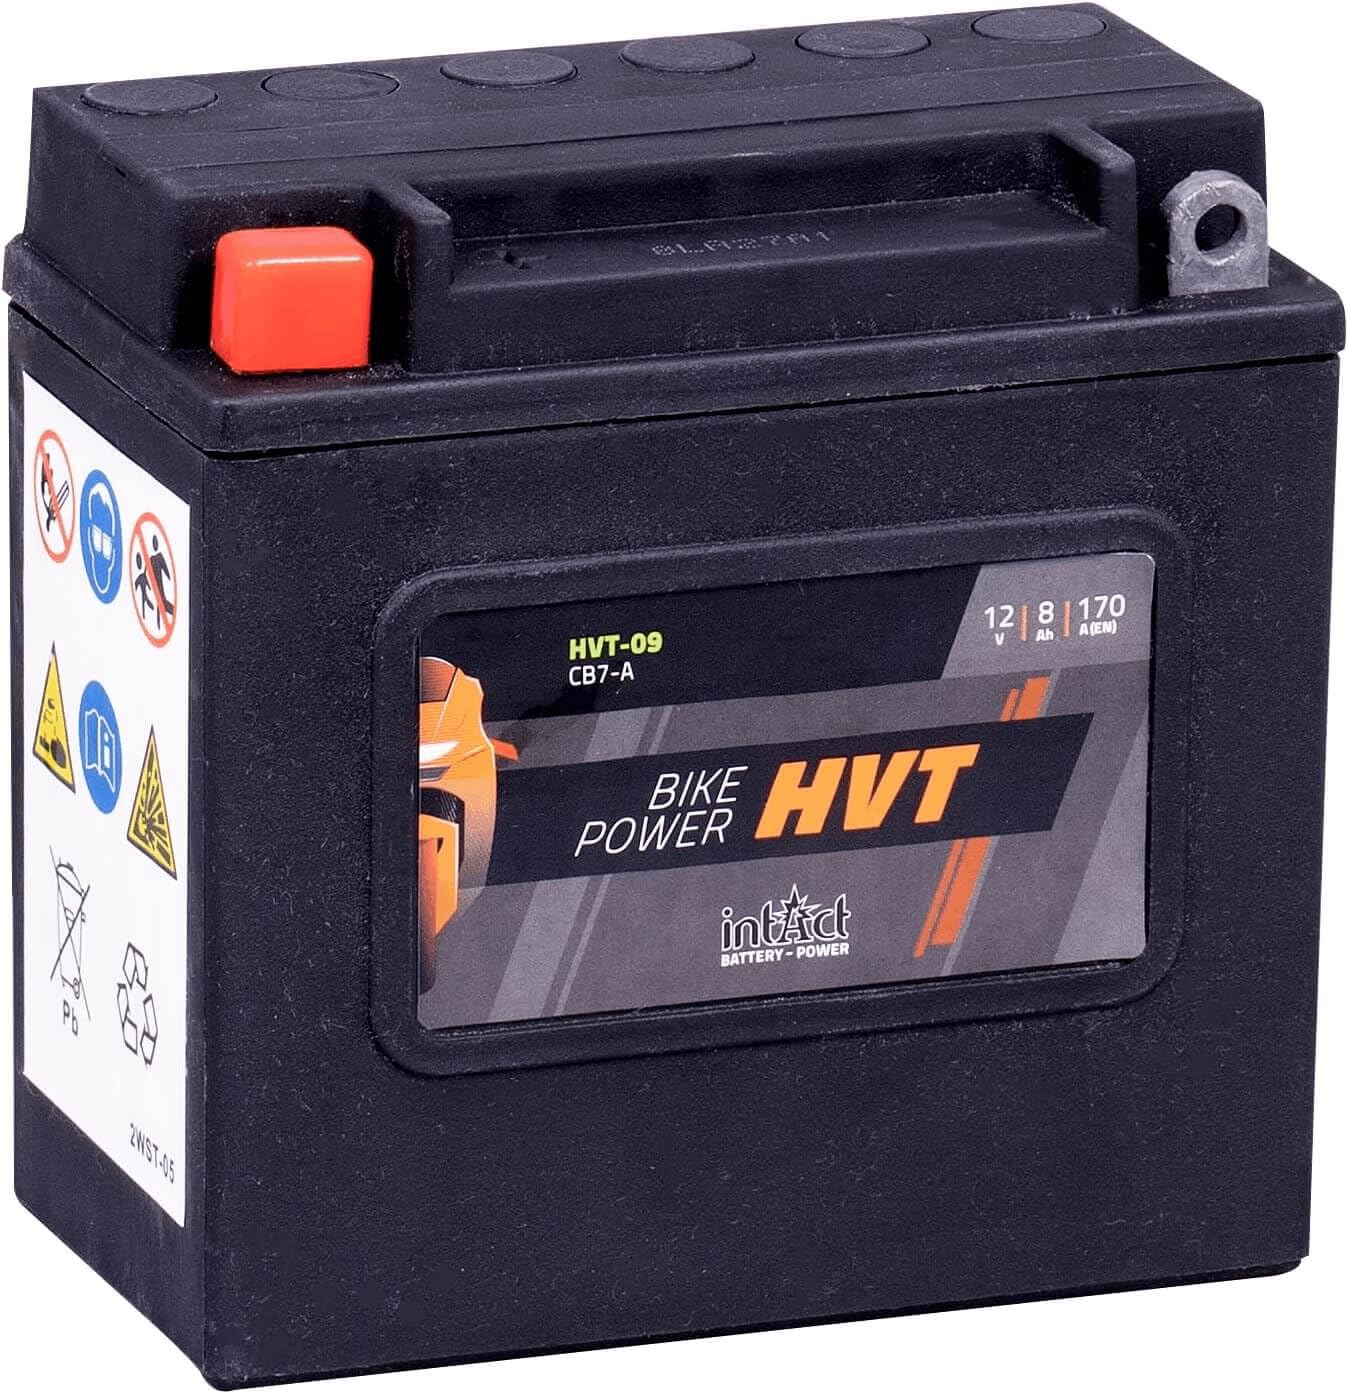 intAct - HVT MOTORRADBATTERIE | Batterie für Roller, Motorrad, Rasentraktor. Wartungsfreier & auslaufsicherer Akku. | HVT-09, CB7-A, 66006-70, 12V Batterie, 8 AH (c20), 170 A (EN) | Maße: 137x76x134mm von Intact